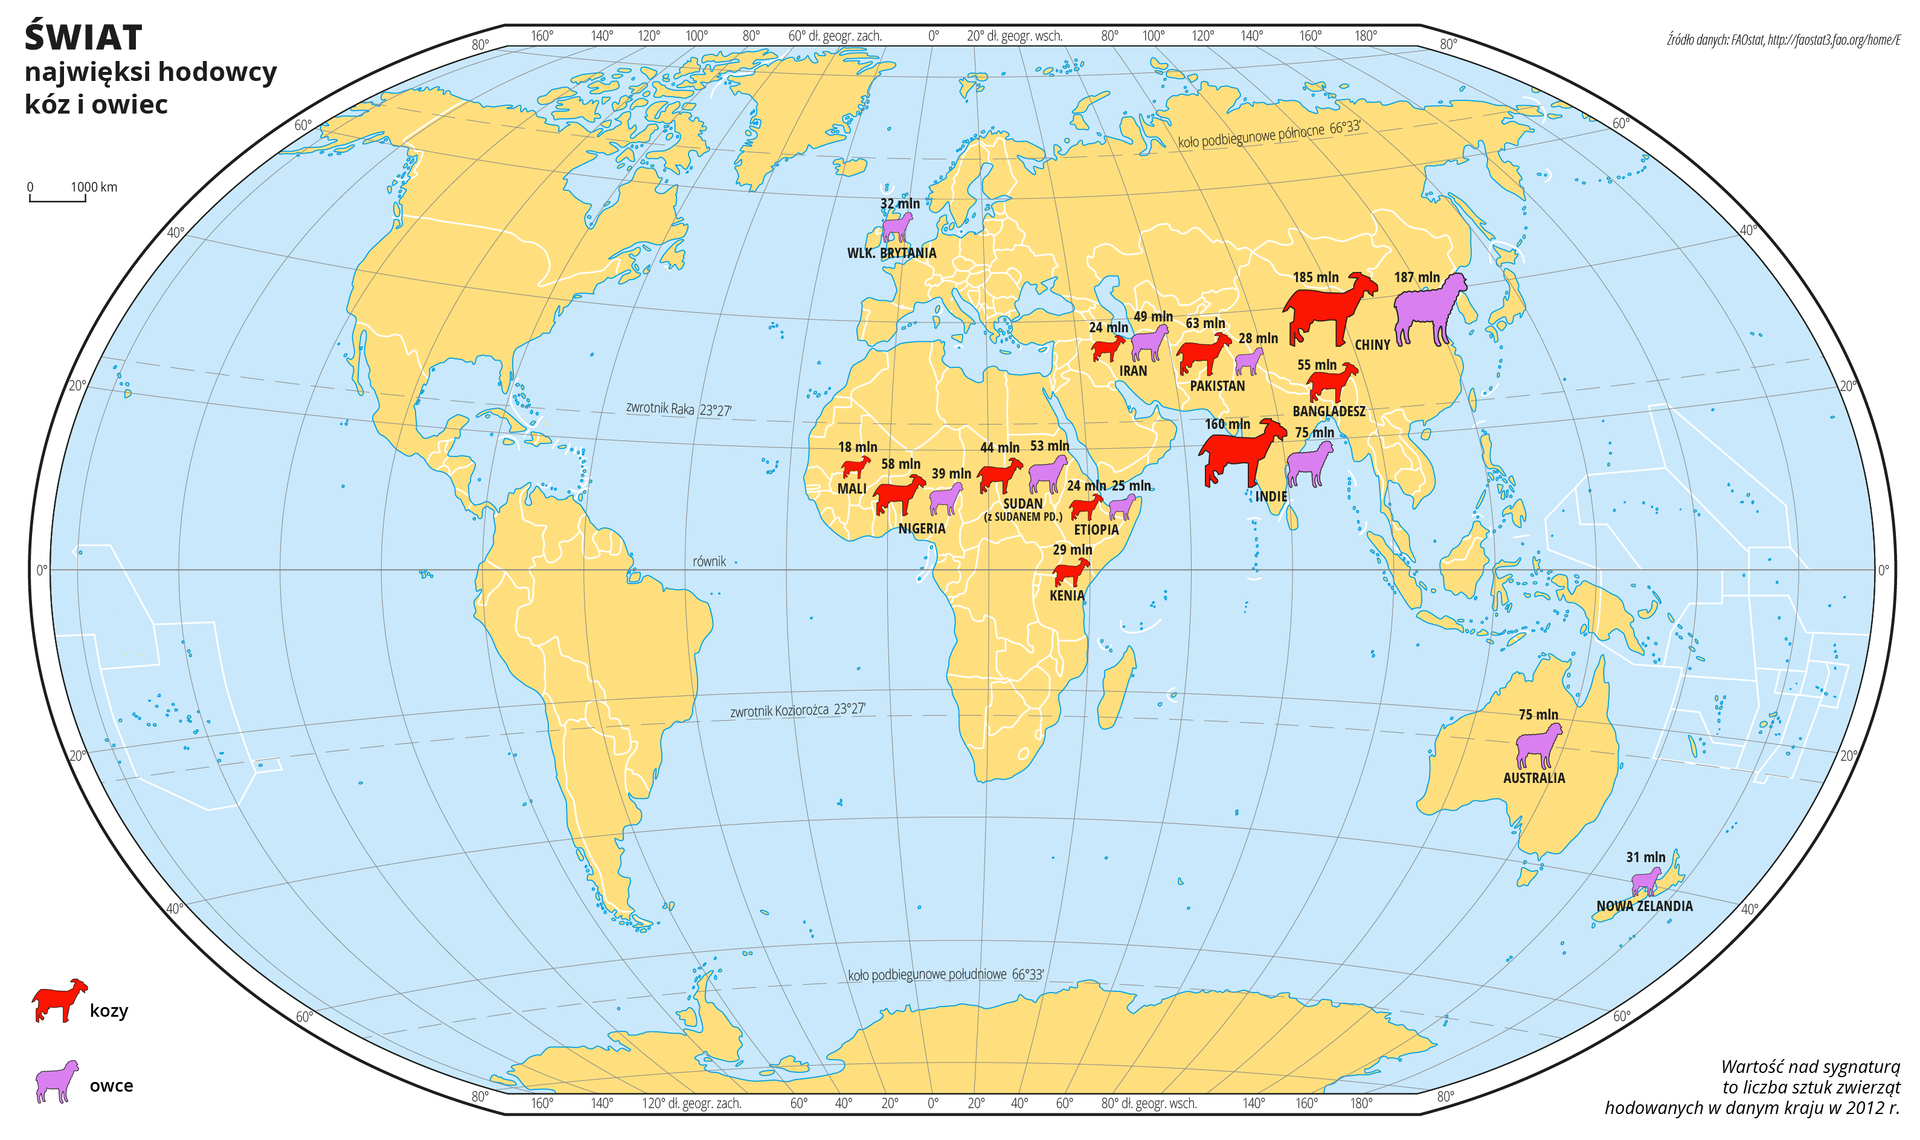 Ilustracja przedstawia mapę świata. Wody zaznaczono kolorem niebieskim. Na mapie za pomocą sygnatur (czerwona koza, fioletowa owca) przedstawiono największych hodowców kóz i owiec. Nad sygnaturą zapisano liczbę sztuk zwierząt hodowanych w danym kraju w 2012 roku. Najwięcej kóz i owiec występuje w środkowej część Afryki oraz w południowej części Azji, co można stwierdzić na podstawie wielkości i ilości sygnatur. W Wielkiej Brytanii, Australii i Nowej Zelandii oznaczono duże występowanie owiec. Mapa pokryta jest równoleżnikami i południkami. Dookoła mapy w białej ramce opisano współrzędne geograficzne co dwadzieścia stopni. Objaśnienie sygnatur użytych na mapie znajduje się poza obszarem mapy, po lewej stronie.